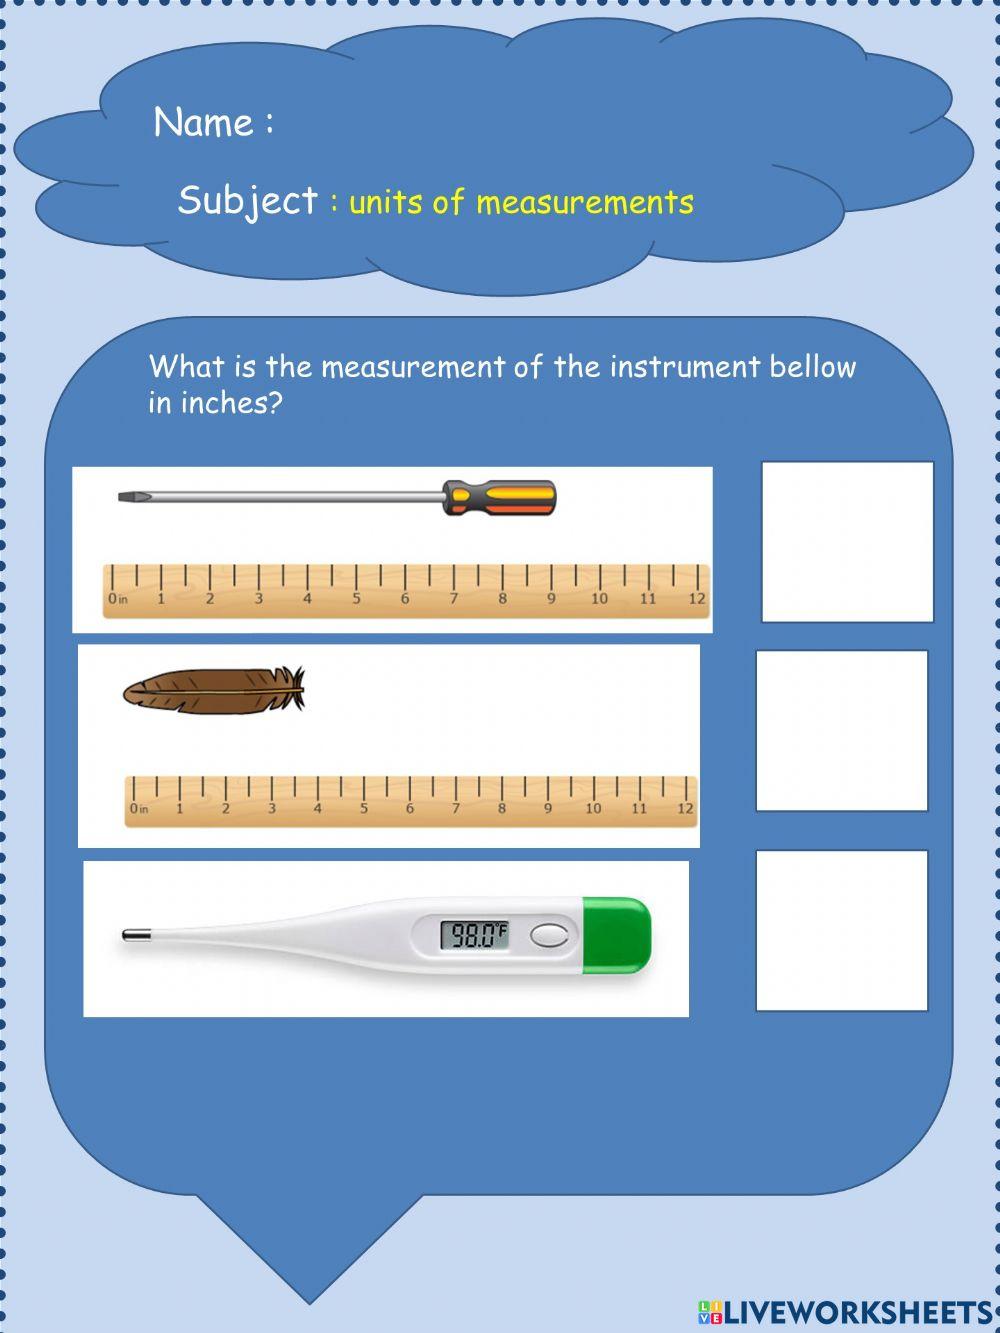 Unis of measuremen